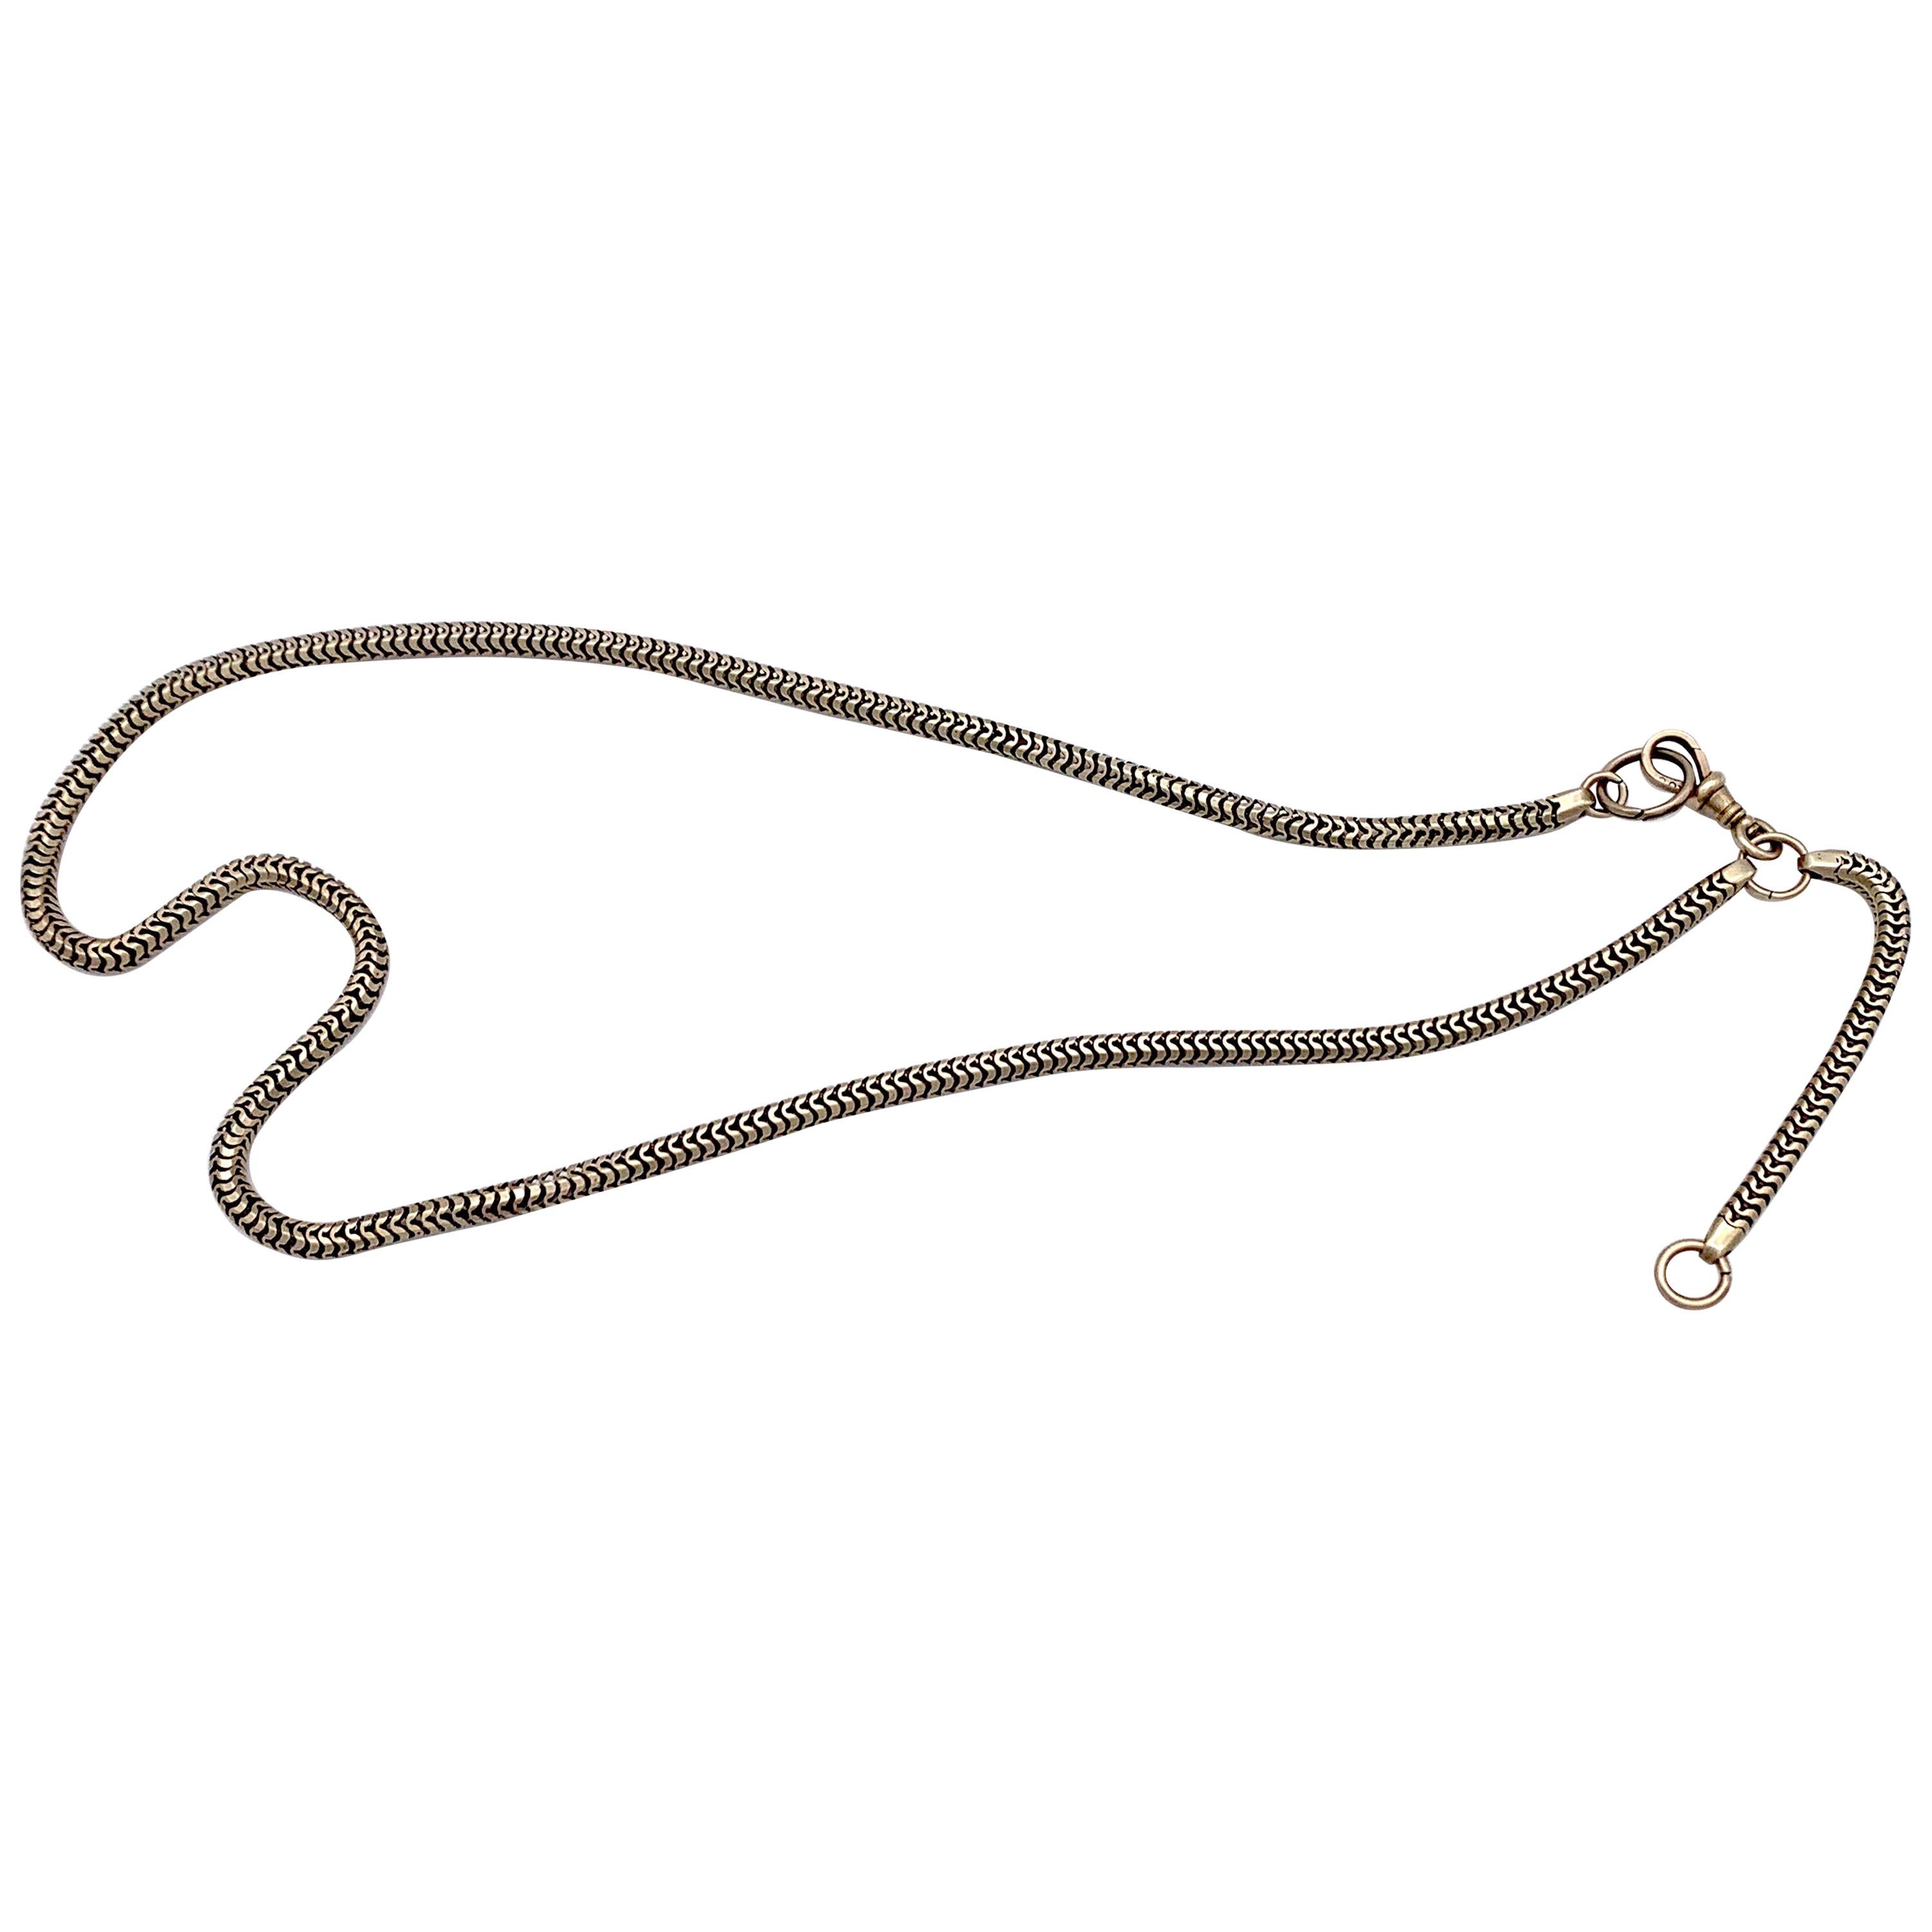 Antique Victorian Serpent Link Chain Necklace Watch Chain 9 Karat Gold